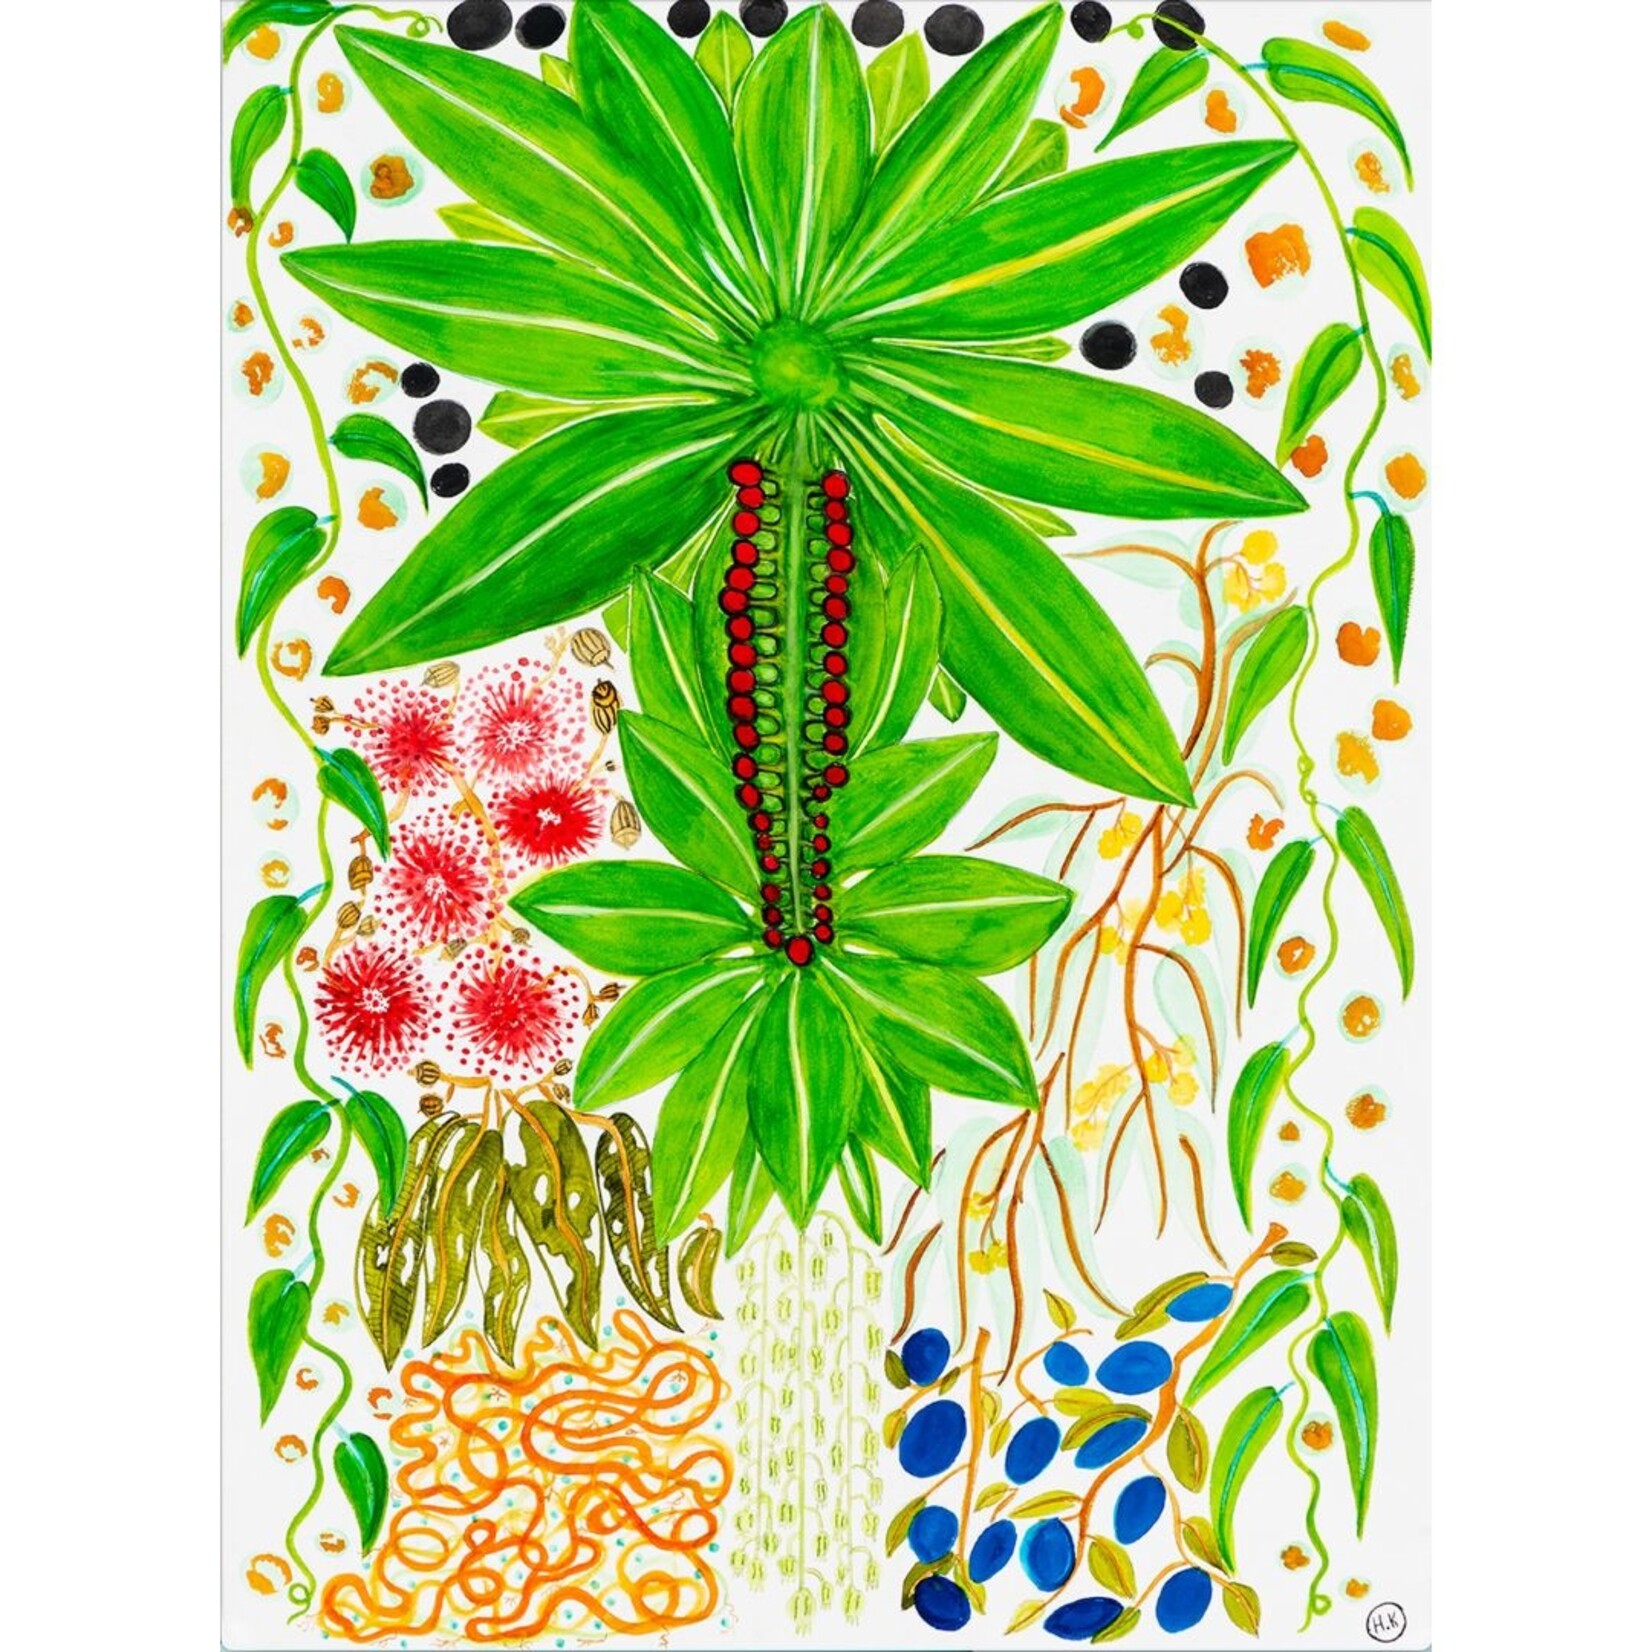 Heather Koowootha, Brilliant Displays of Mangrove | Tea Towel